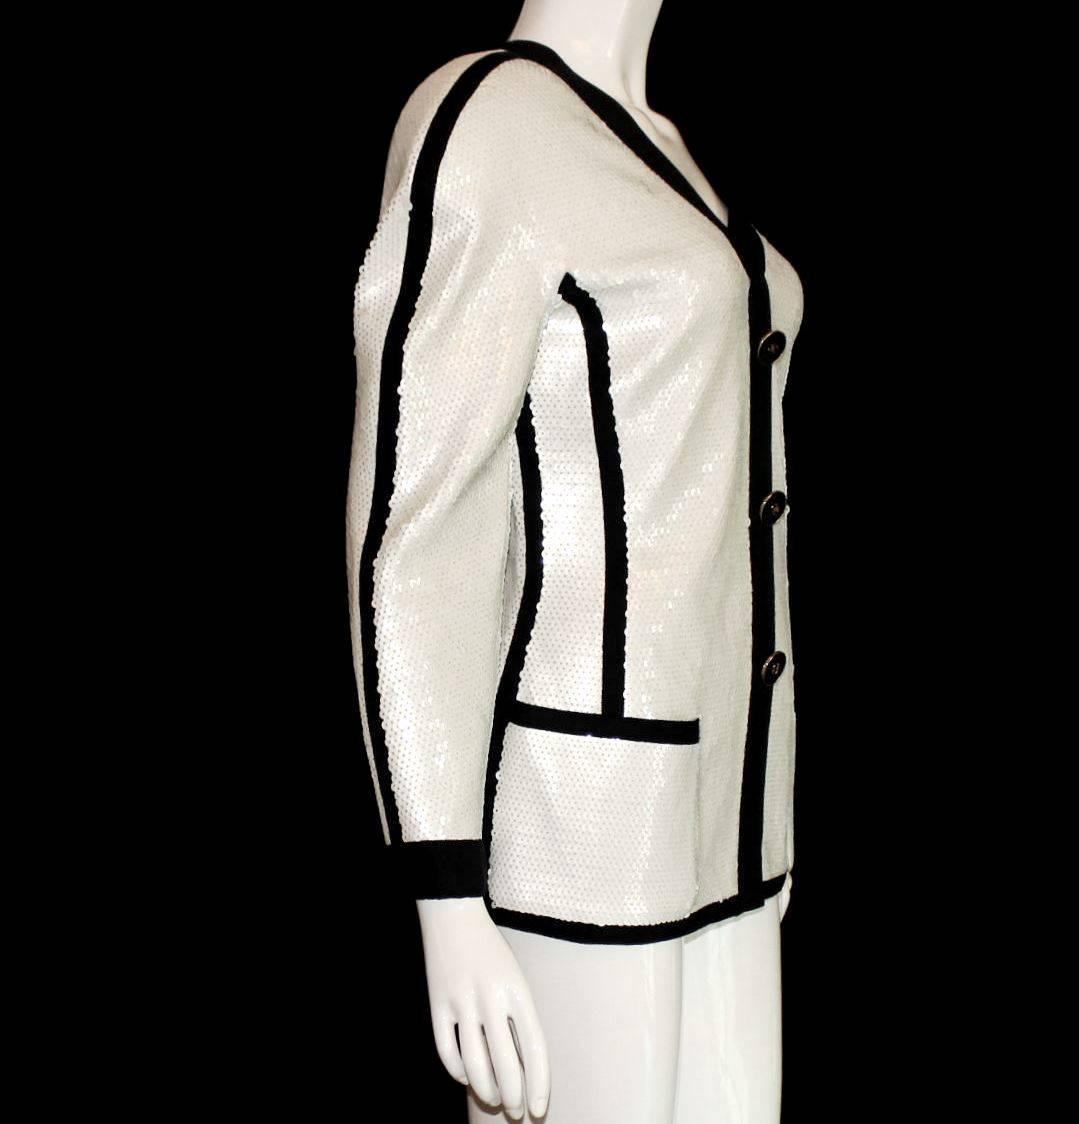 Une veste Chanel extrêmement rare du début des années 1990
Vu sur Anna Wintour, rédactrice en chef de Vogue
Une partie de l'exposition au Metropolitan Museum de New York en 2005
Veste à paillettes blanche avec garniture noire
Fermeture à glissière